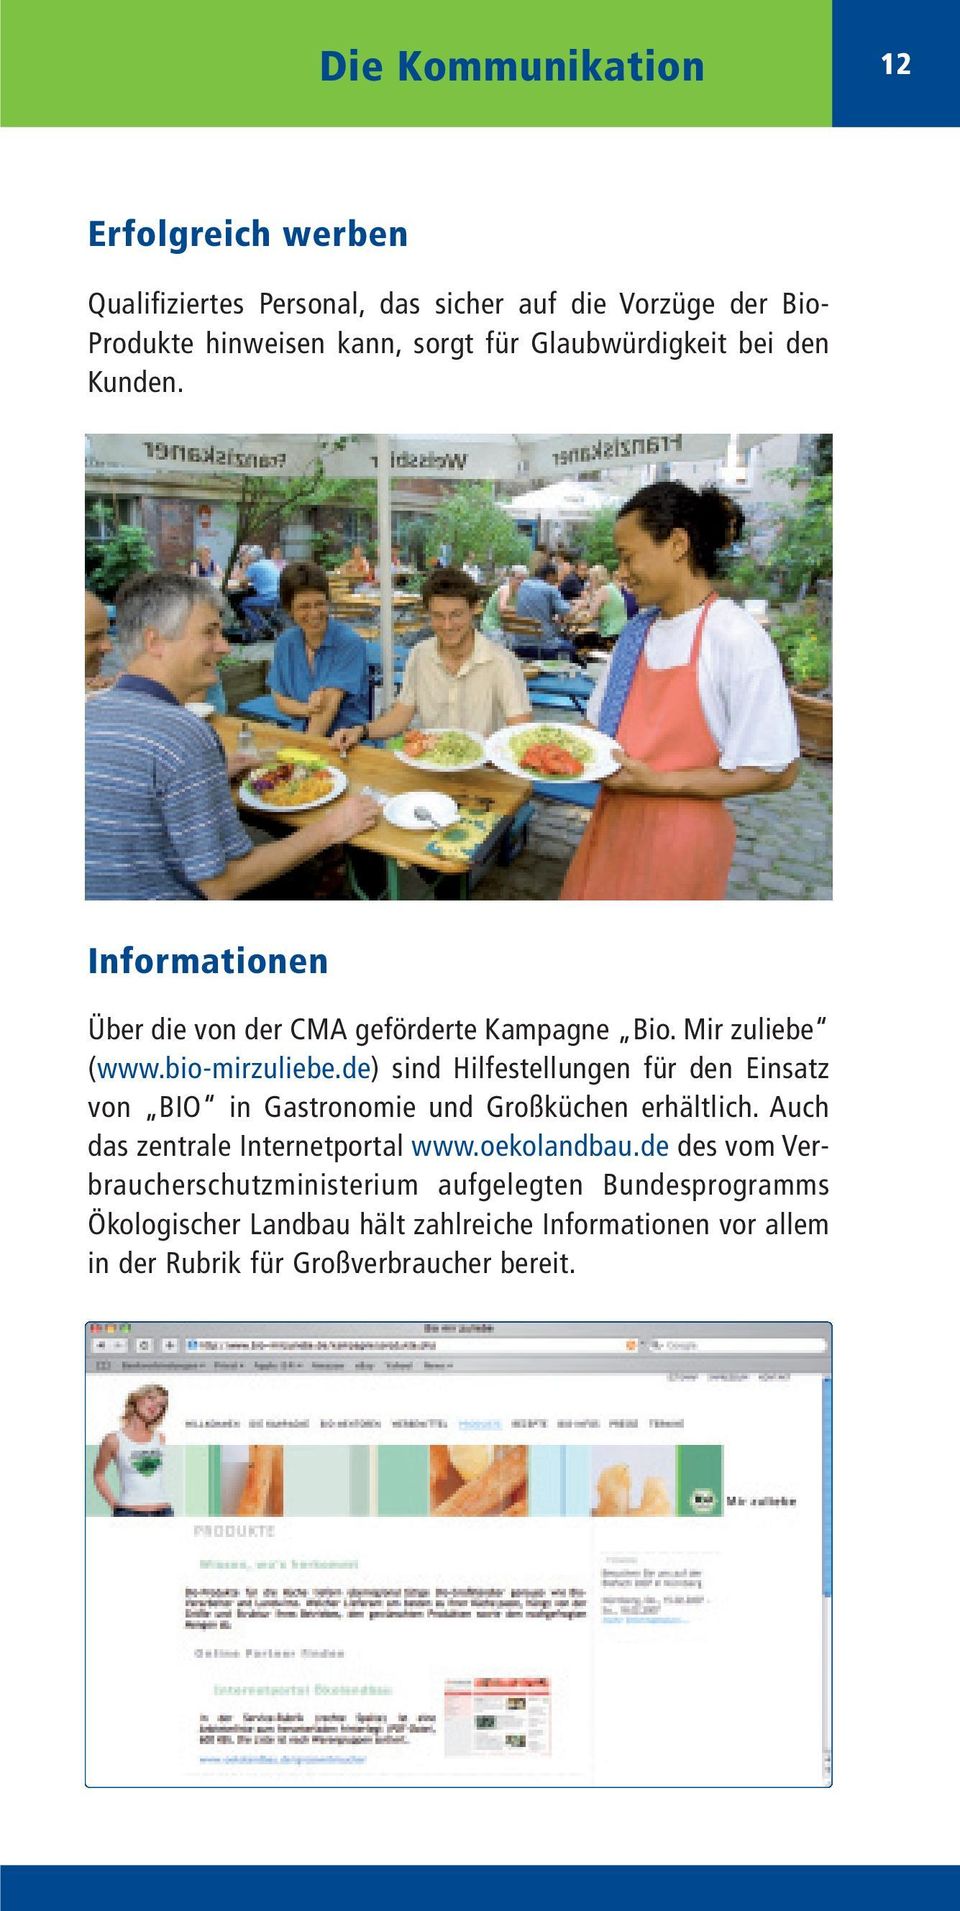 de) sind Hilfestellungen für den Einsatz von BIO in Gastronomie und Großküchen erhältlich. Auch das zentrale Internetportal www.oekolandbau.